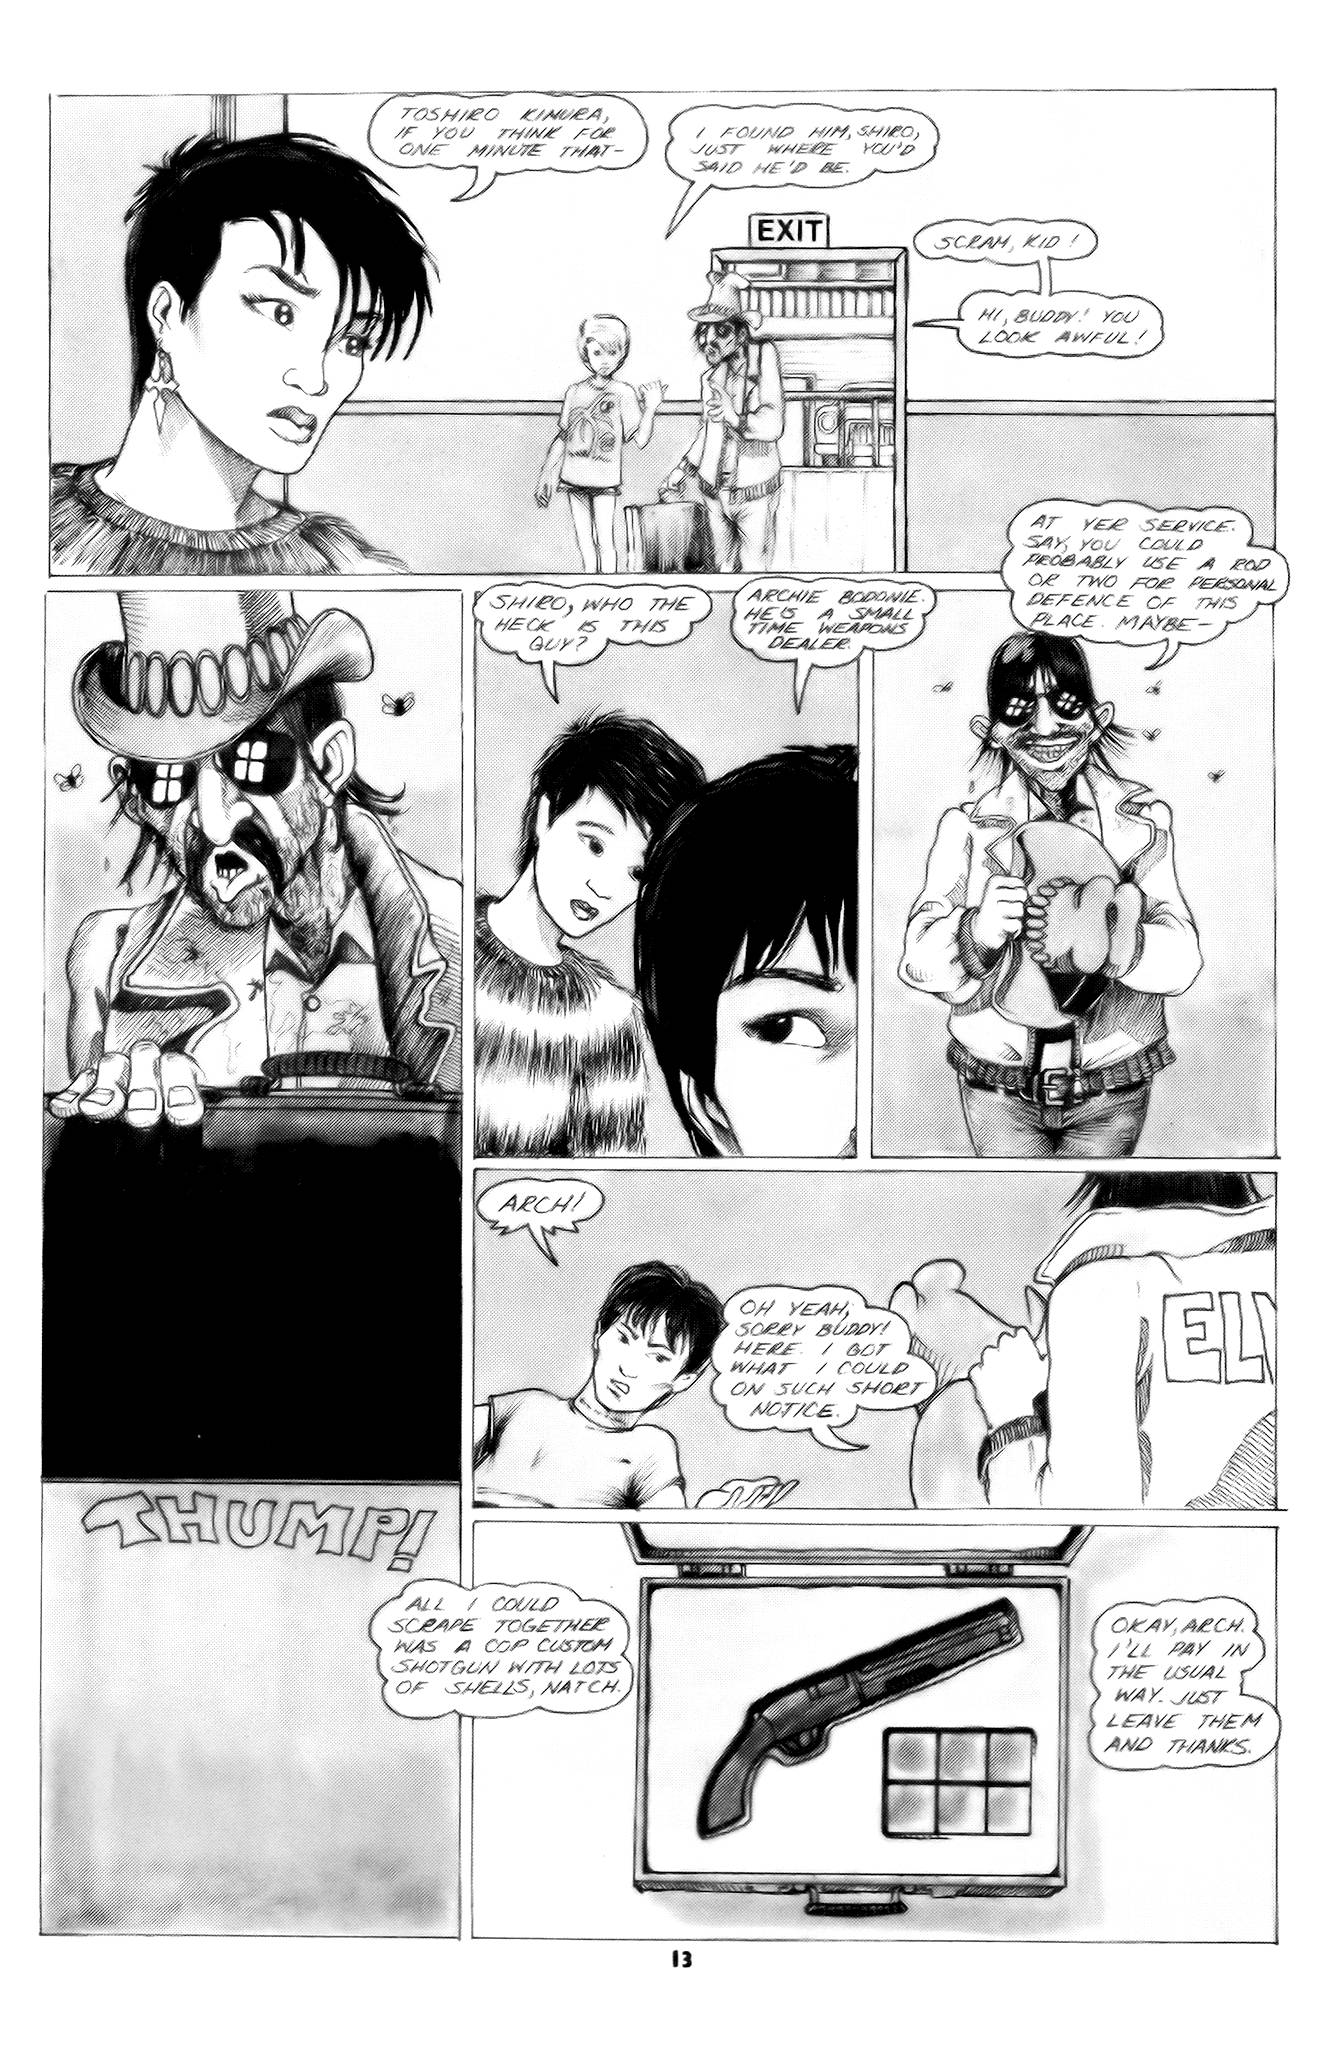 Read online Samurai comic -  Issue #3 - 15